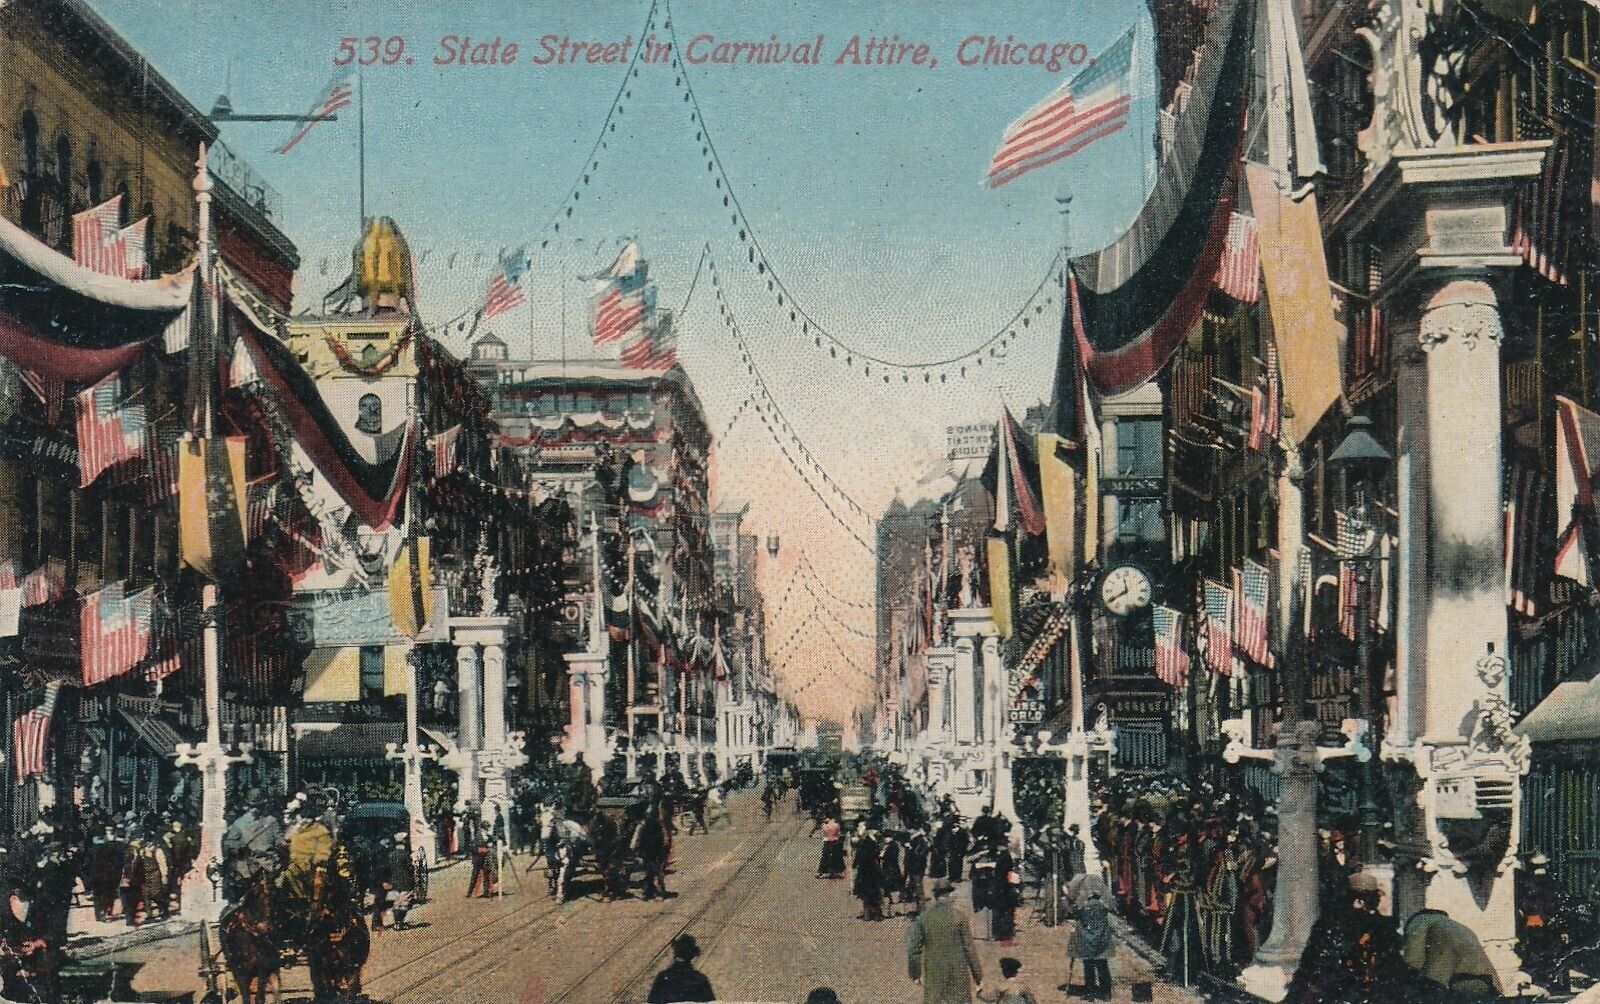 CHICAGO IL - State Street In Carnival Attire Postcard